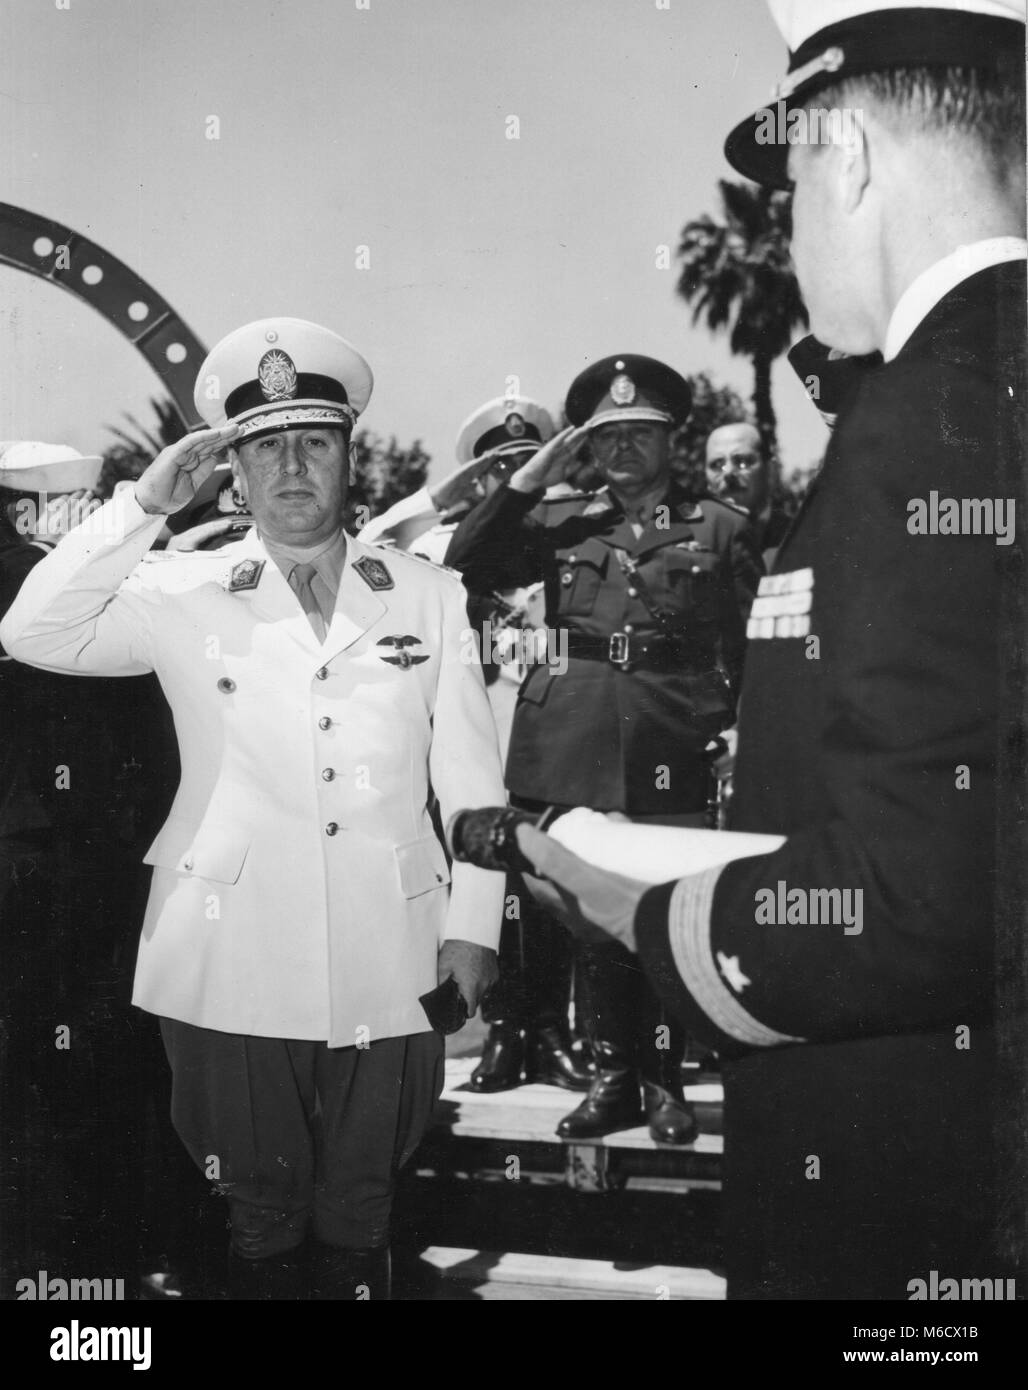 Juan Peron, Président de l'Argentine, est montré a reçu de nombreux honneurs, comme il arrivait à bord du USS HUNTINGTON sur une croisière de bonne volonté. Buenos Aires, Argentine, 6 nov., 1948. Banque D'Images